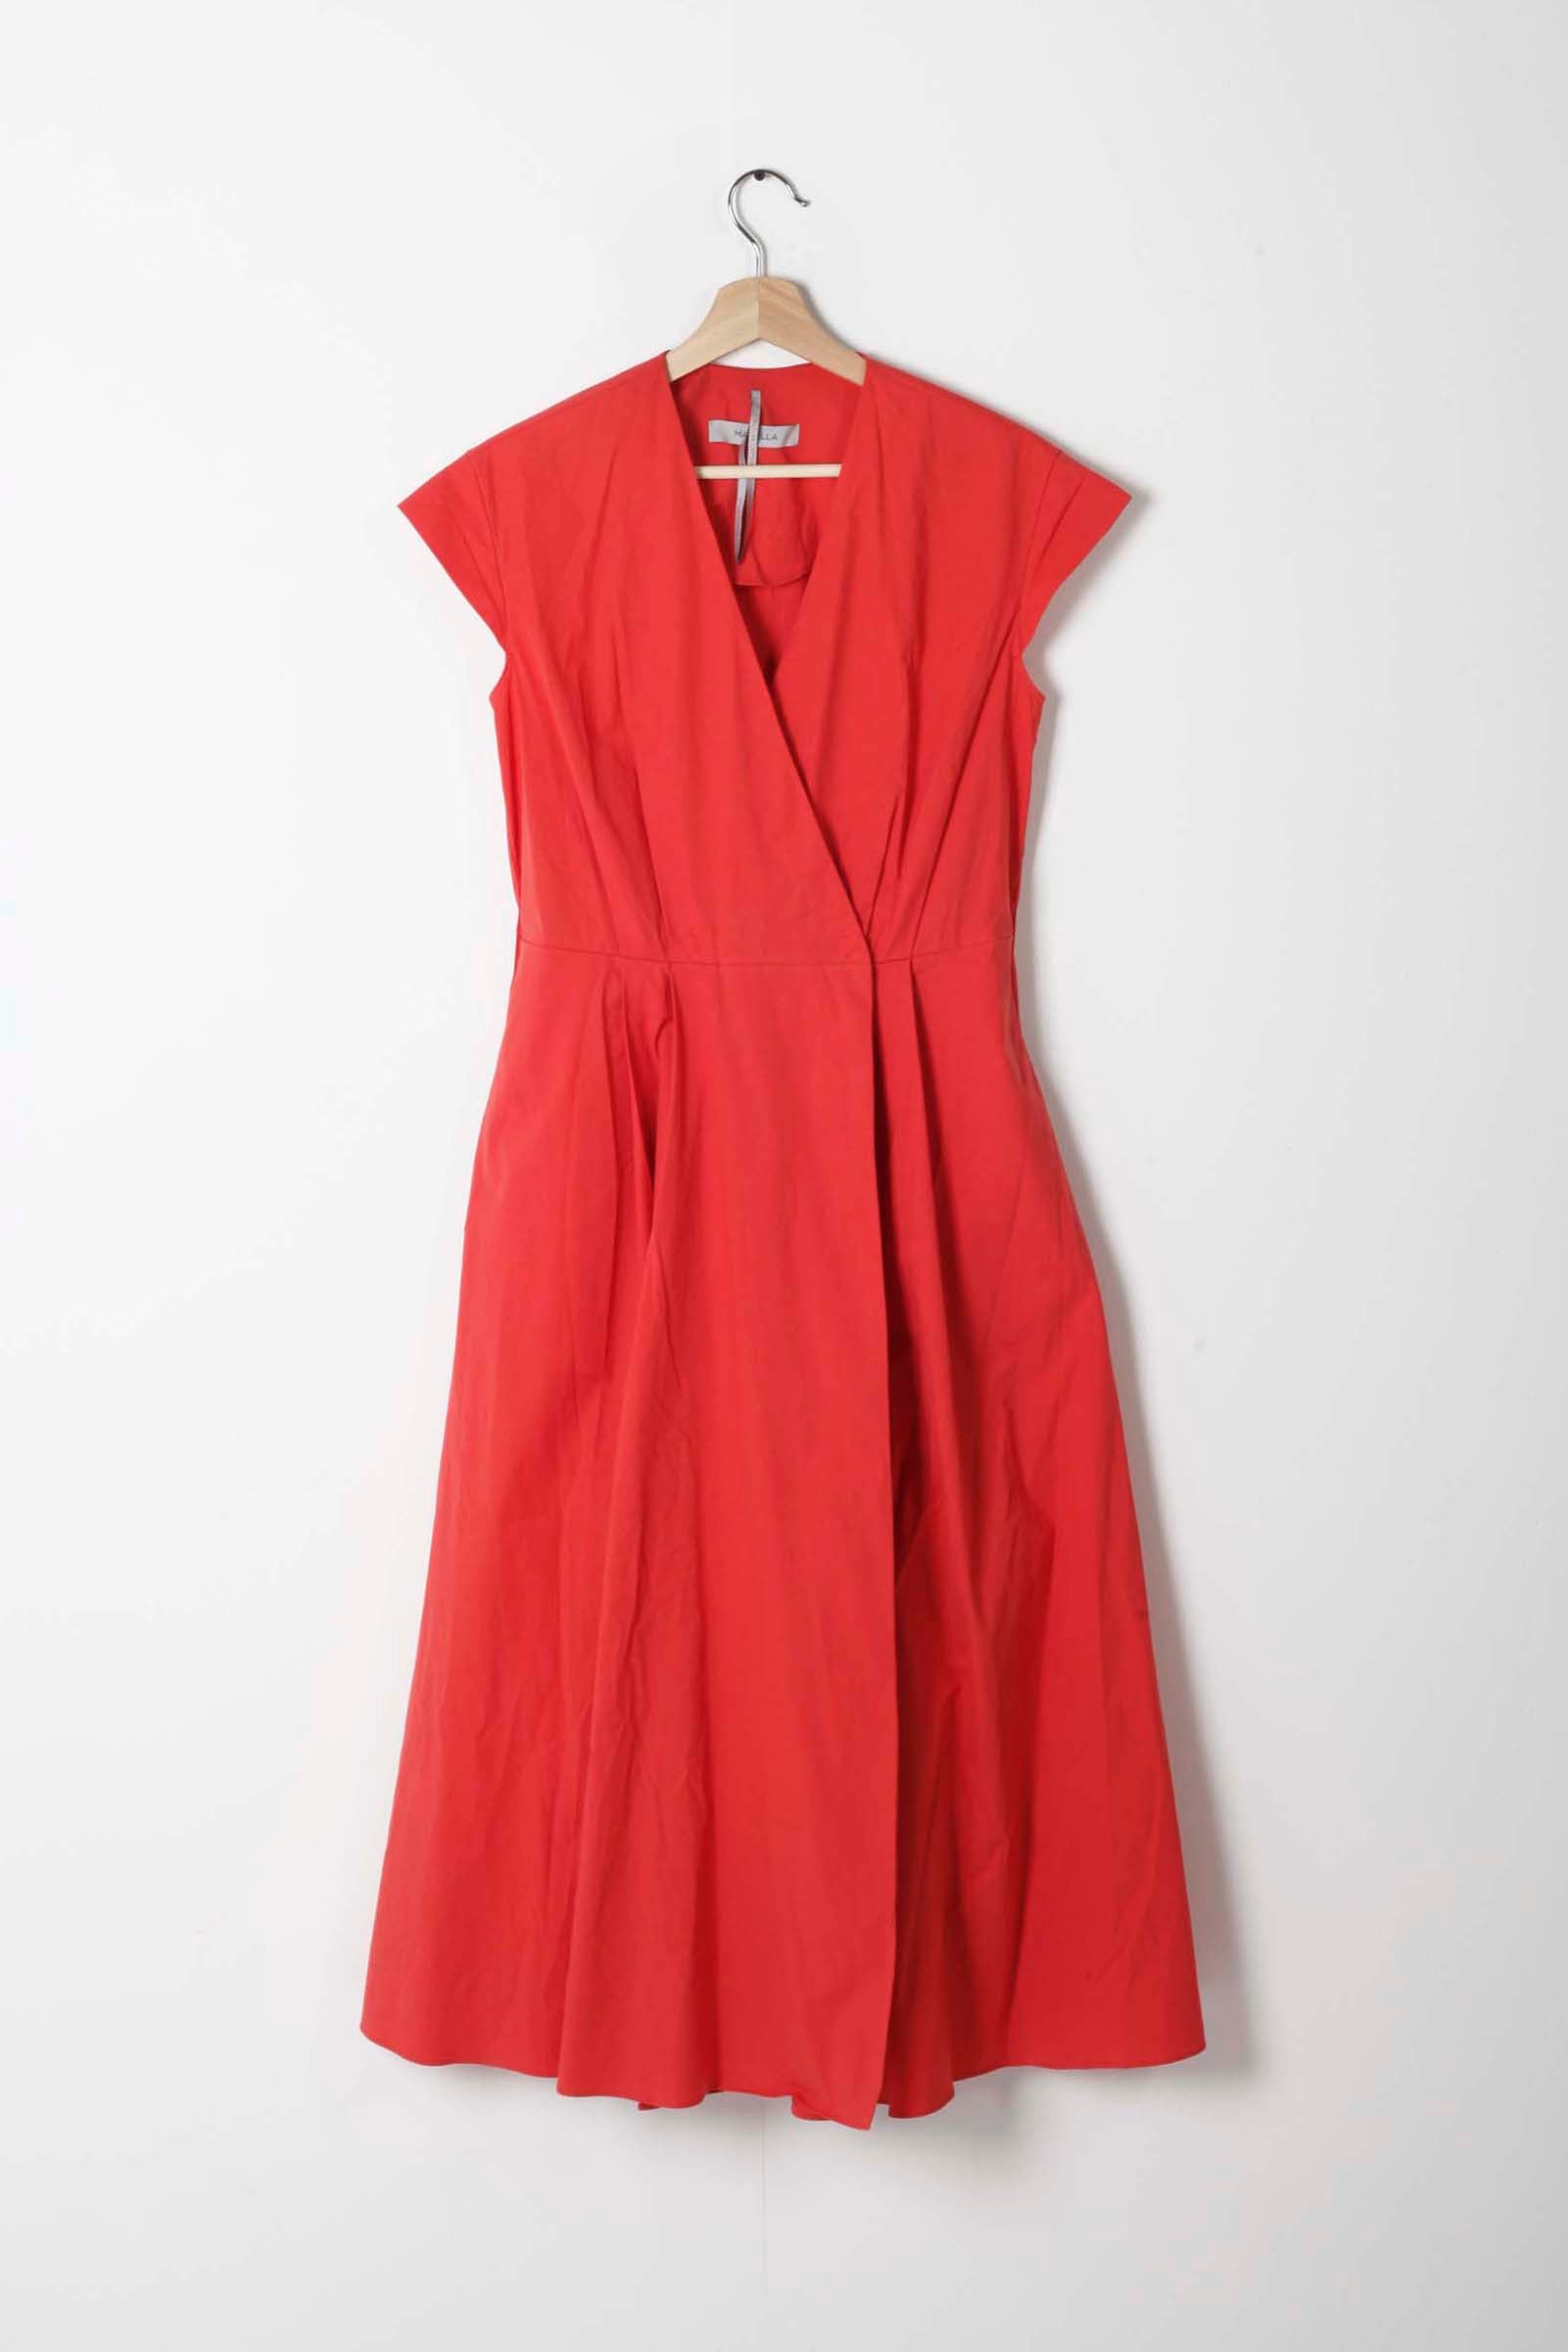 Red Sleeveless Summer Dress